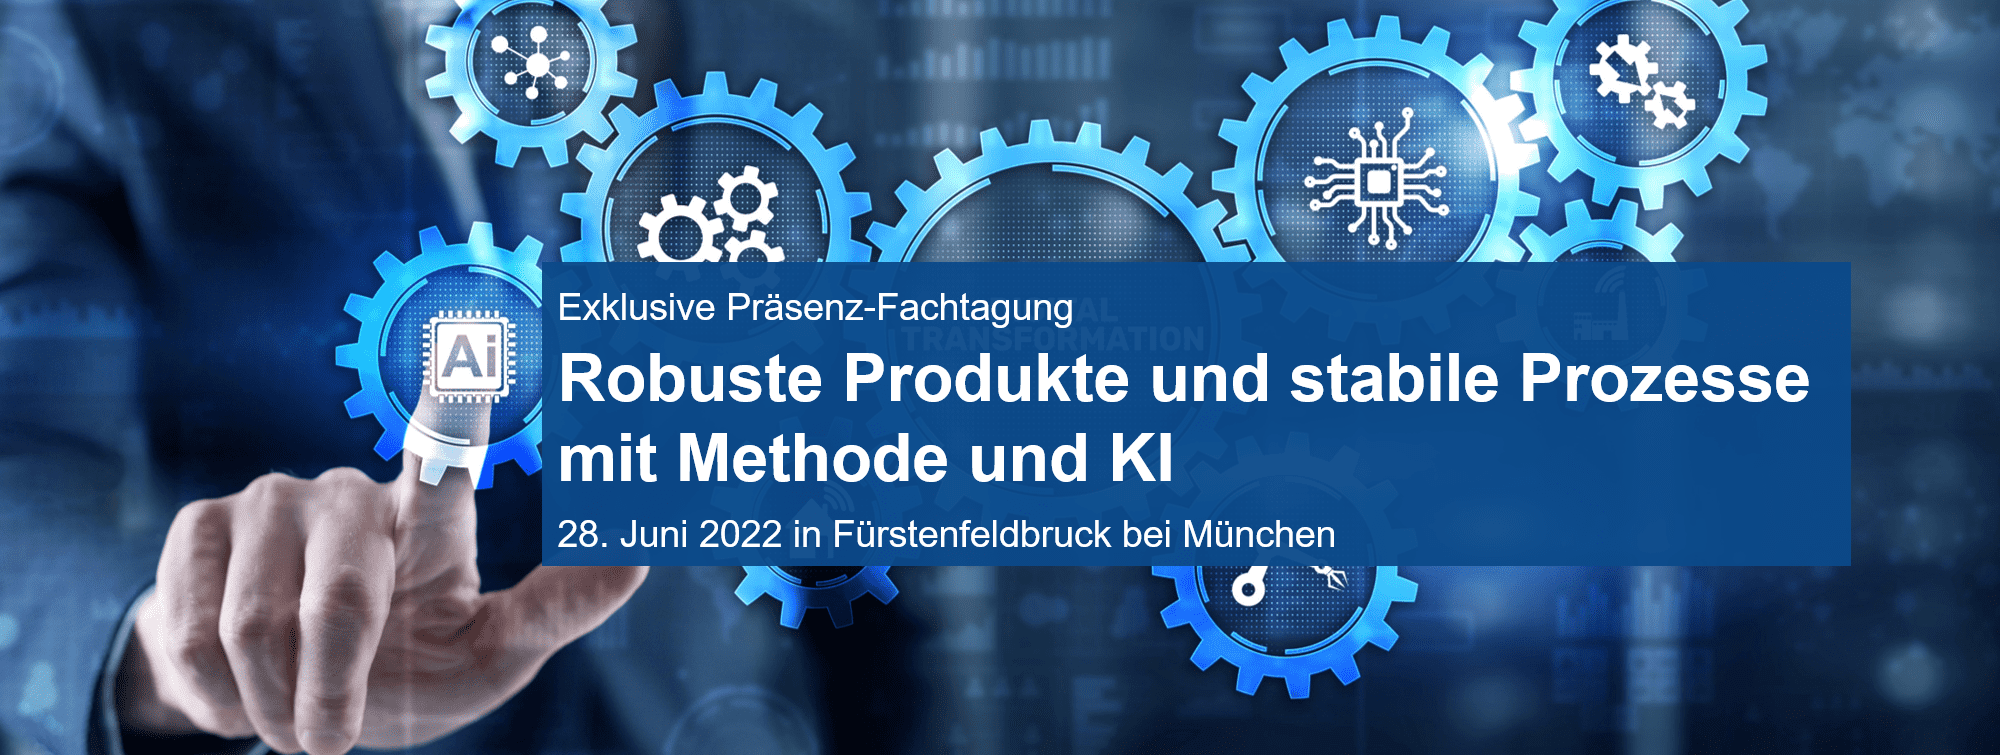 Robuste Produkte und stabile Prozesse - Fachtagung am 28.6.2022